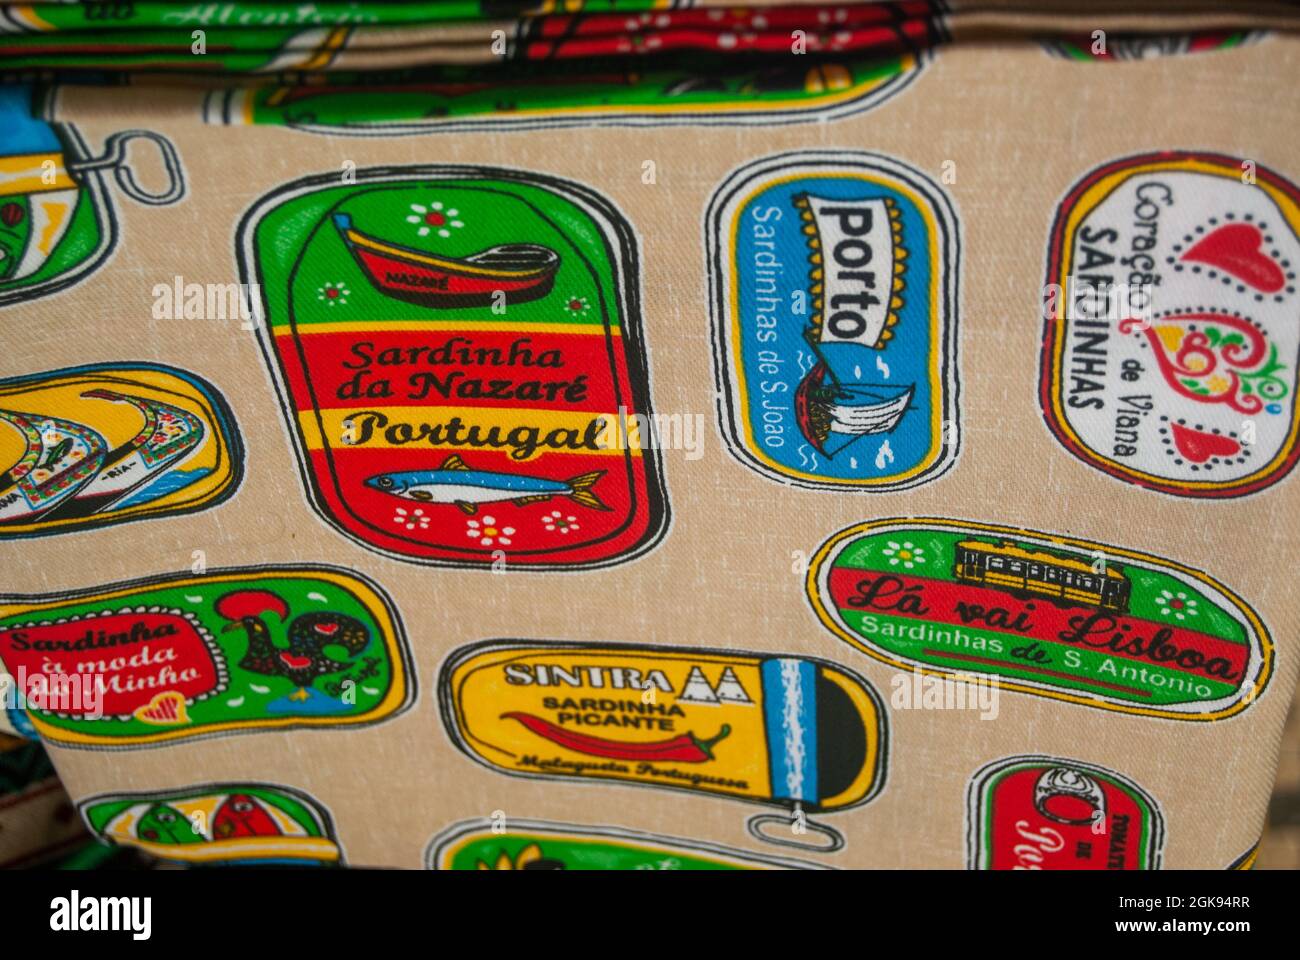 Aveiro, Portugal - 11 juin 2021 : serviette souvenir avec des images colorées de sardines typiques noms de textes de sardines portugaises Entreprises souvenir populaire Banque D'Images